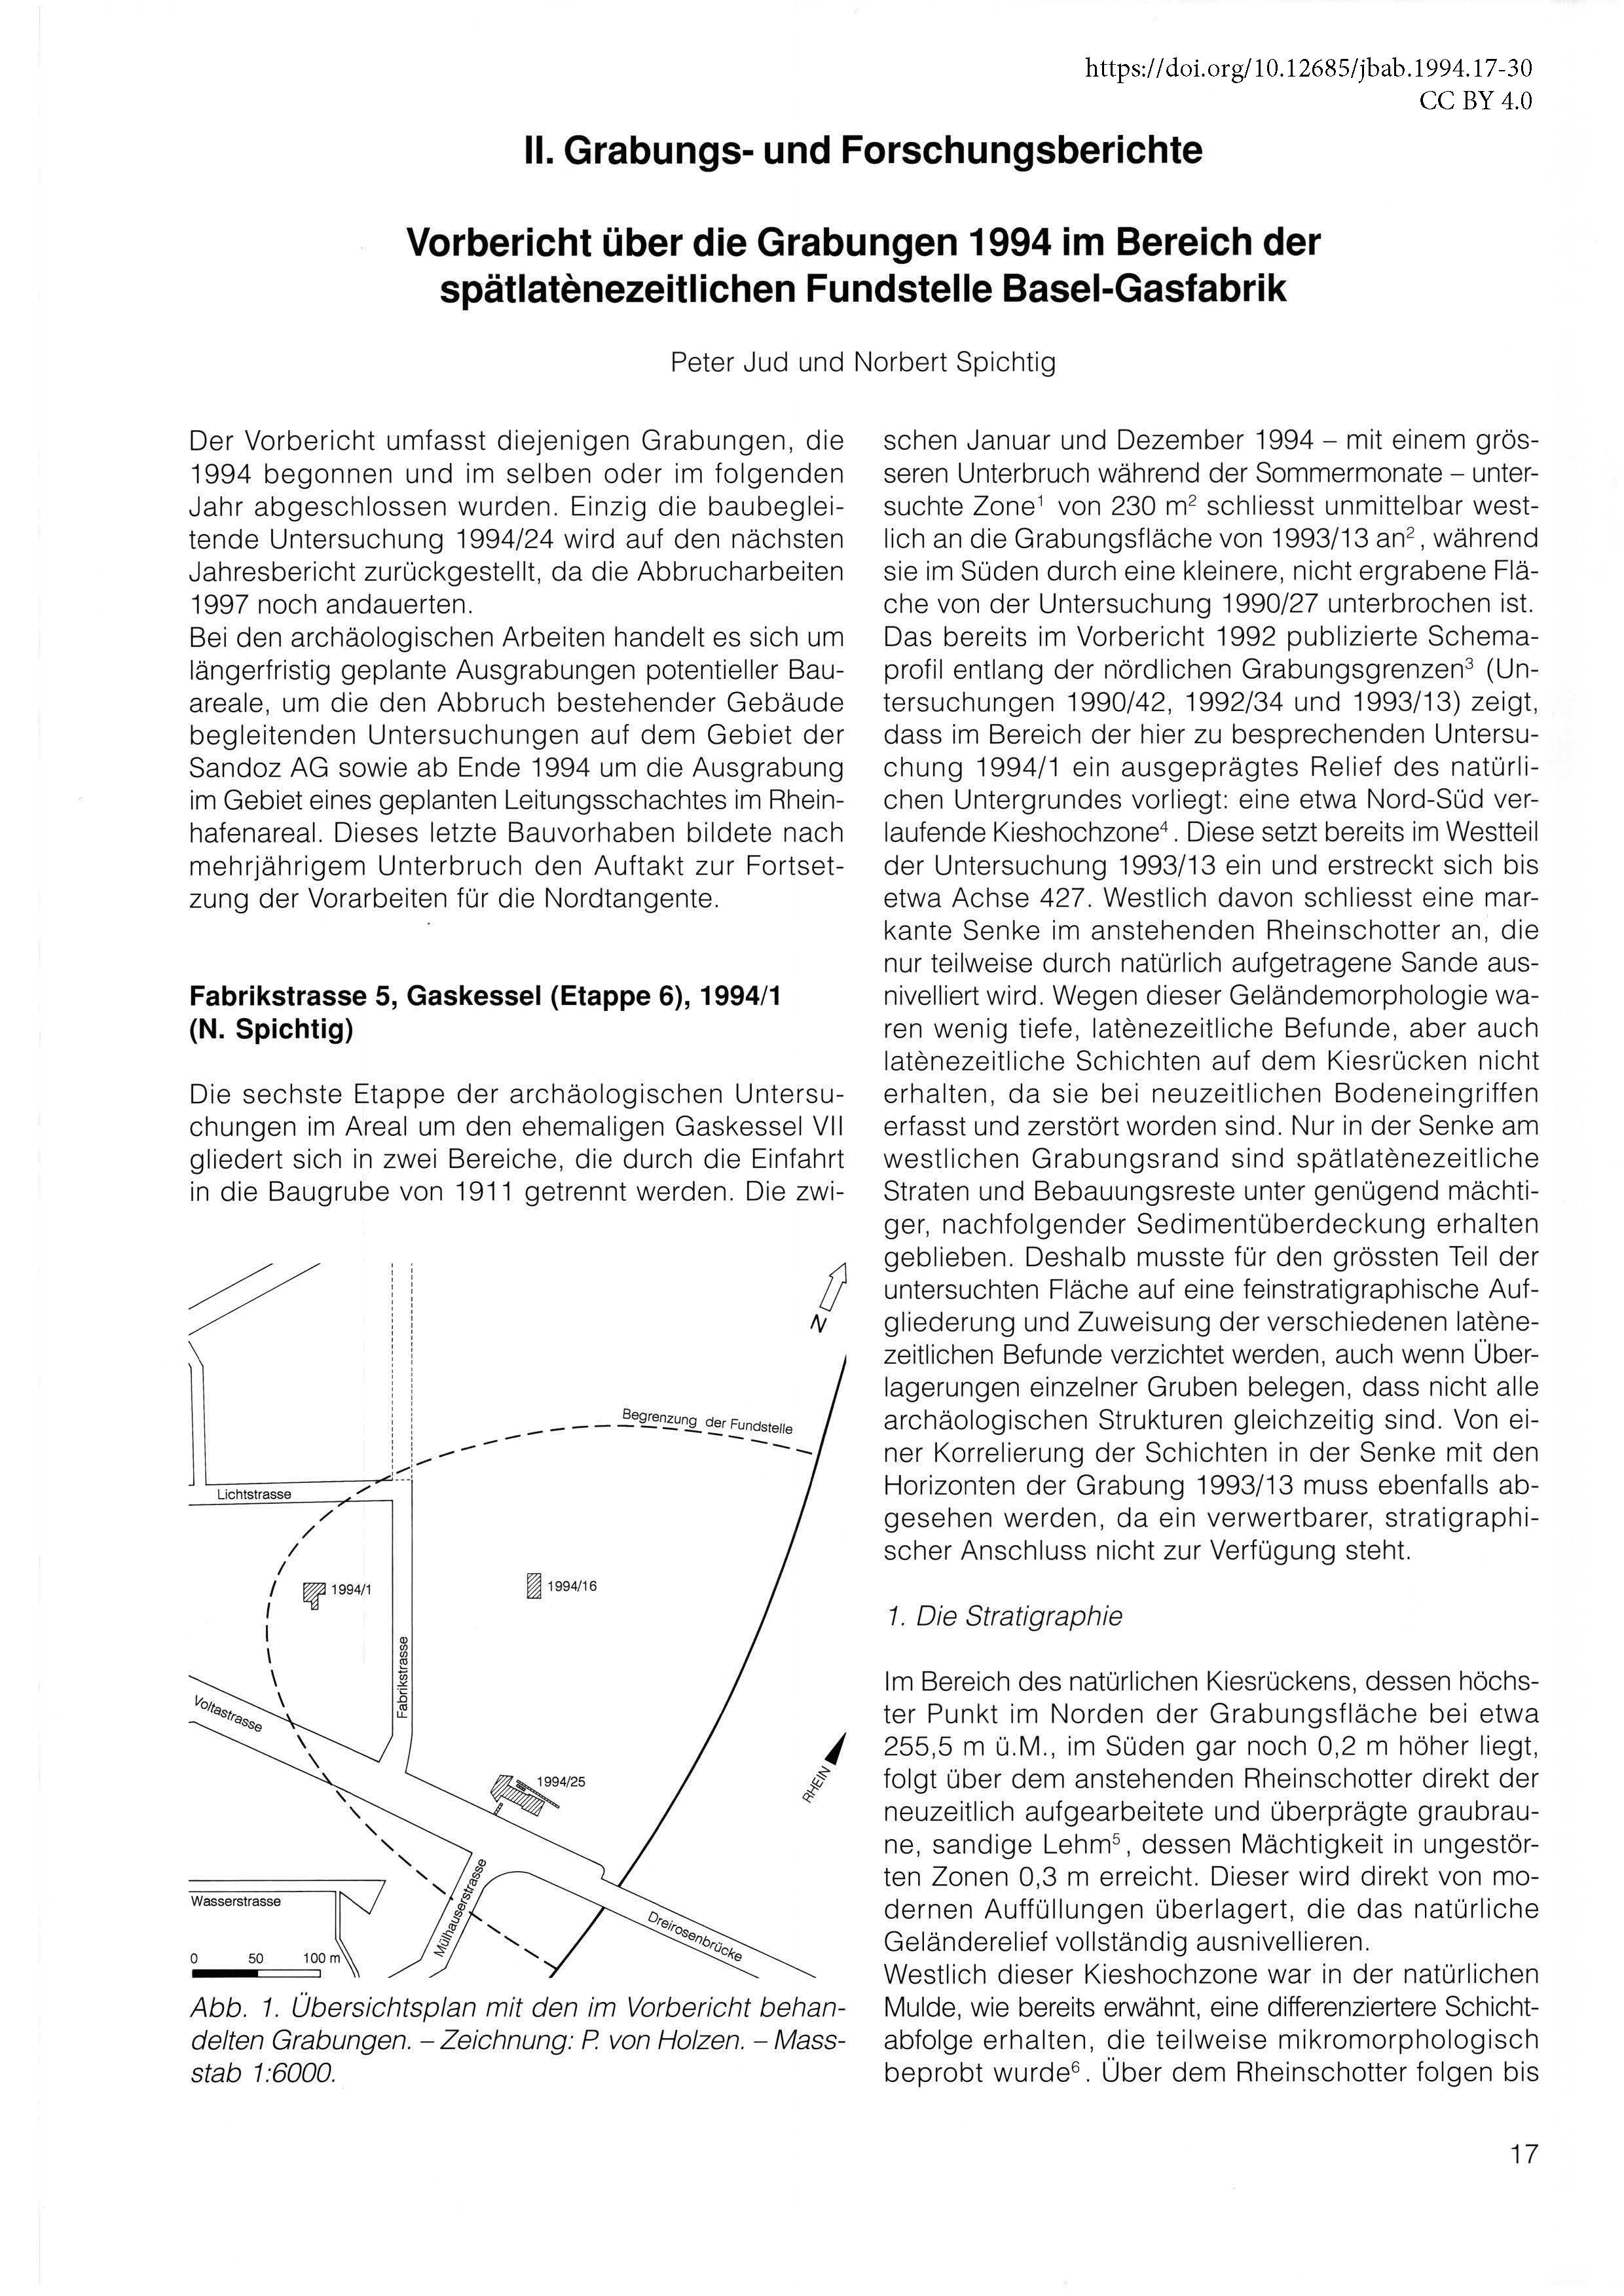 Erste Seite des Vorberichts über die Grabungen in Basel-Gasfabrik